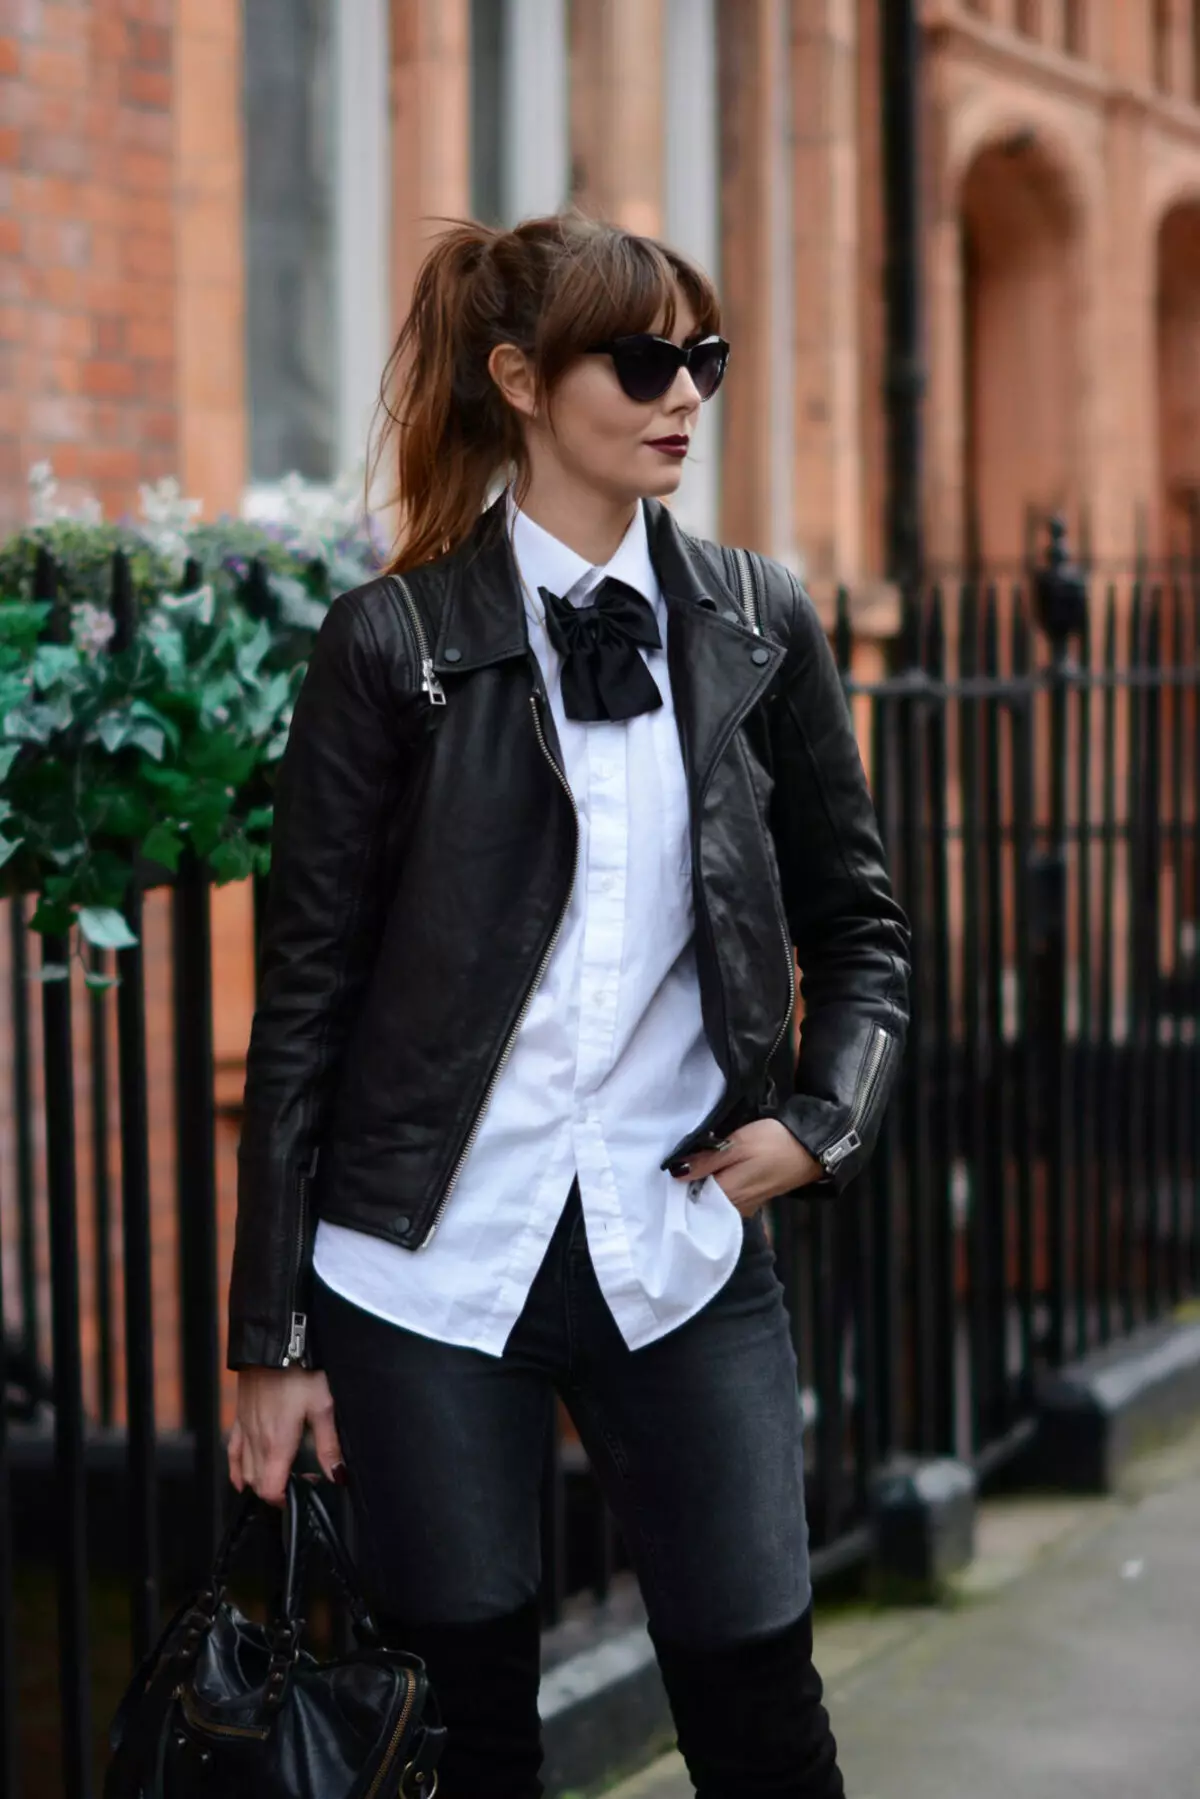 Zwart vrouwelijke jas (99 foto's): wat draagt, afbeeldingen, met broeken, jeans, shirt 1166_56